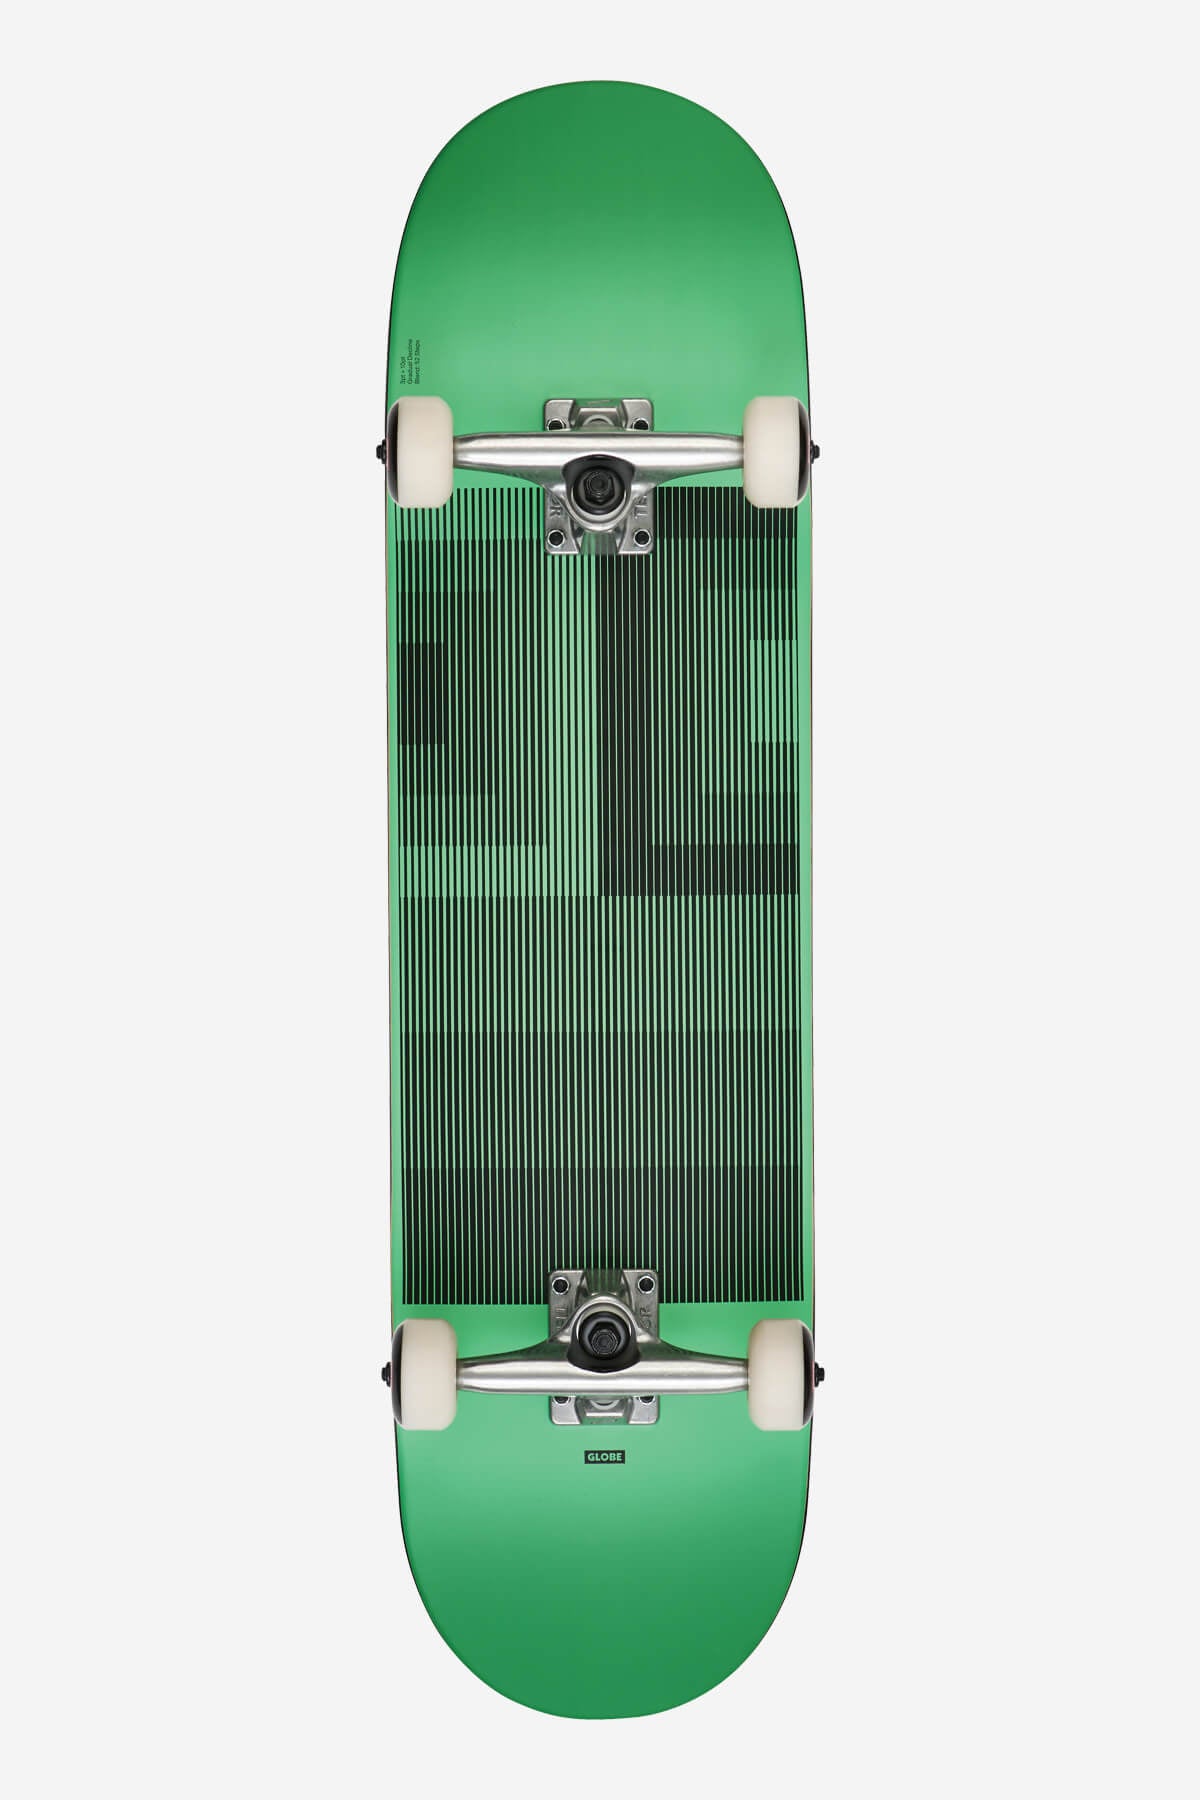 g1 lineform 2 mint 8.25" complete skateboard